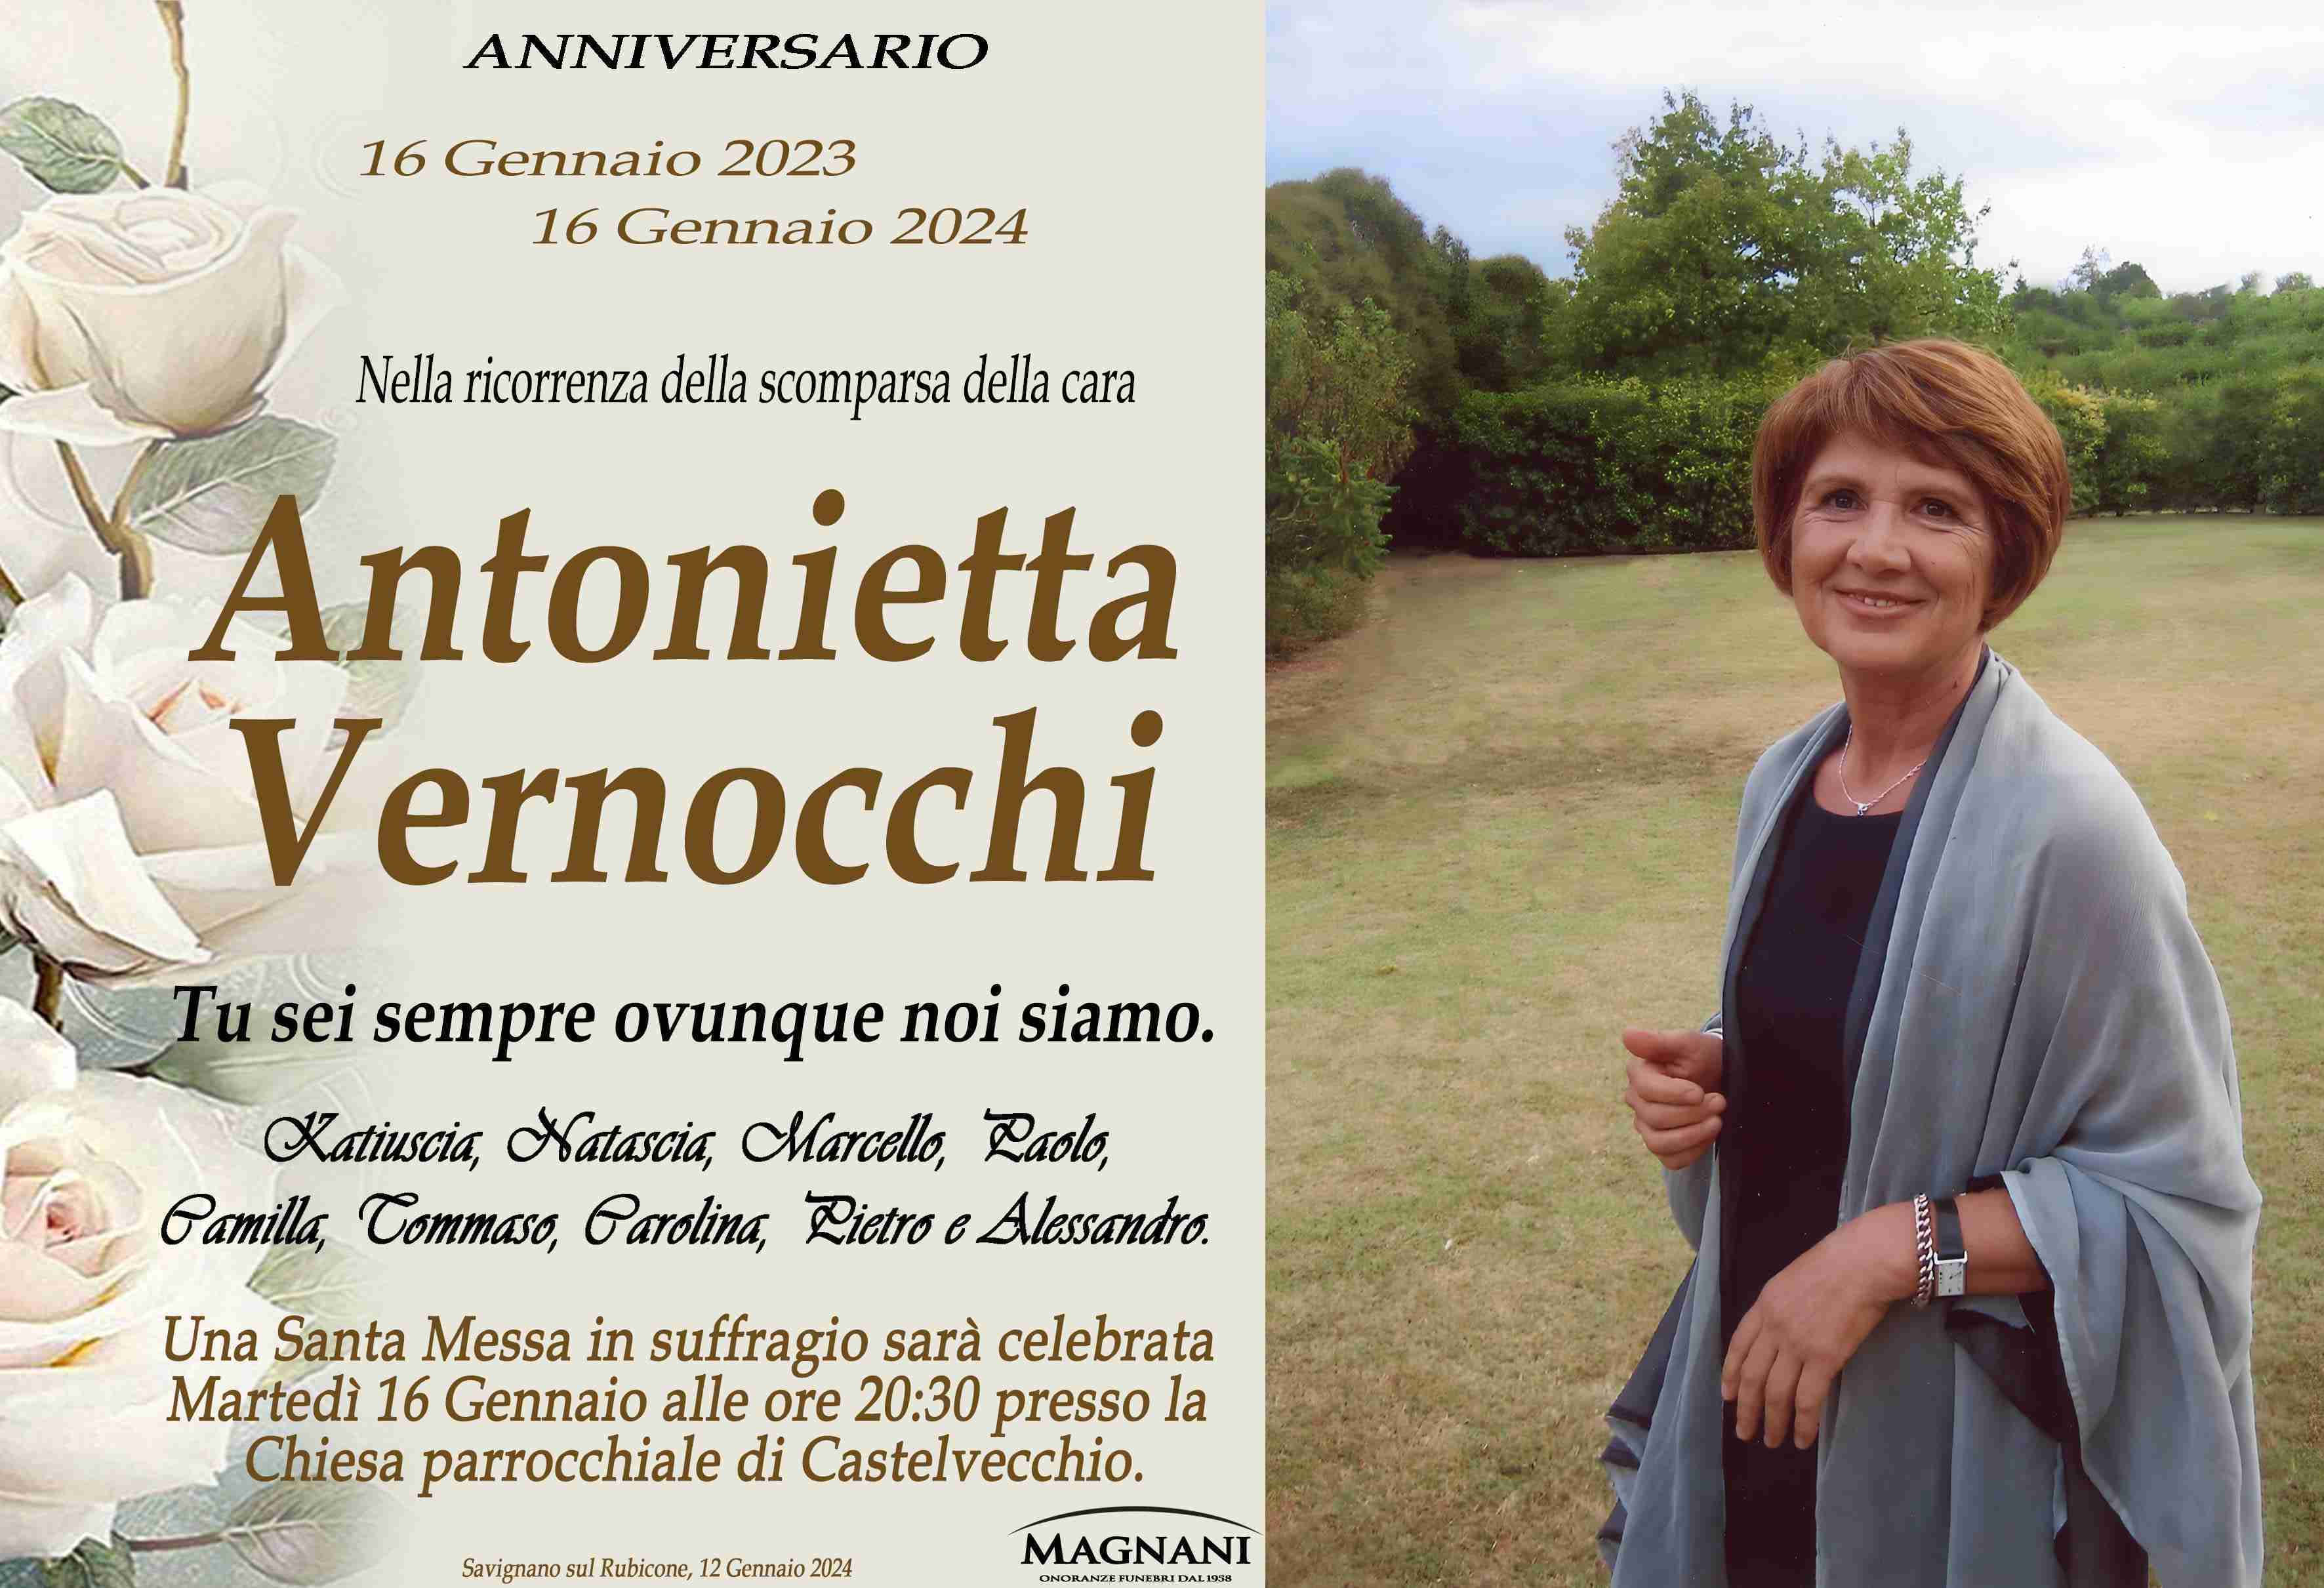 Antonietta Vernocchi